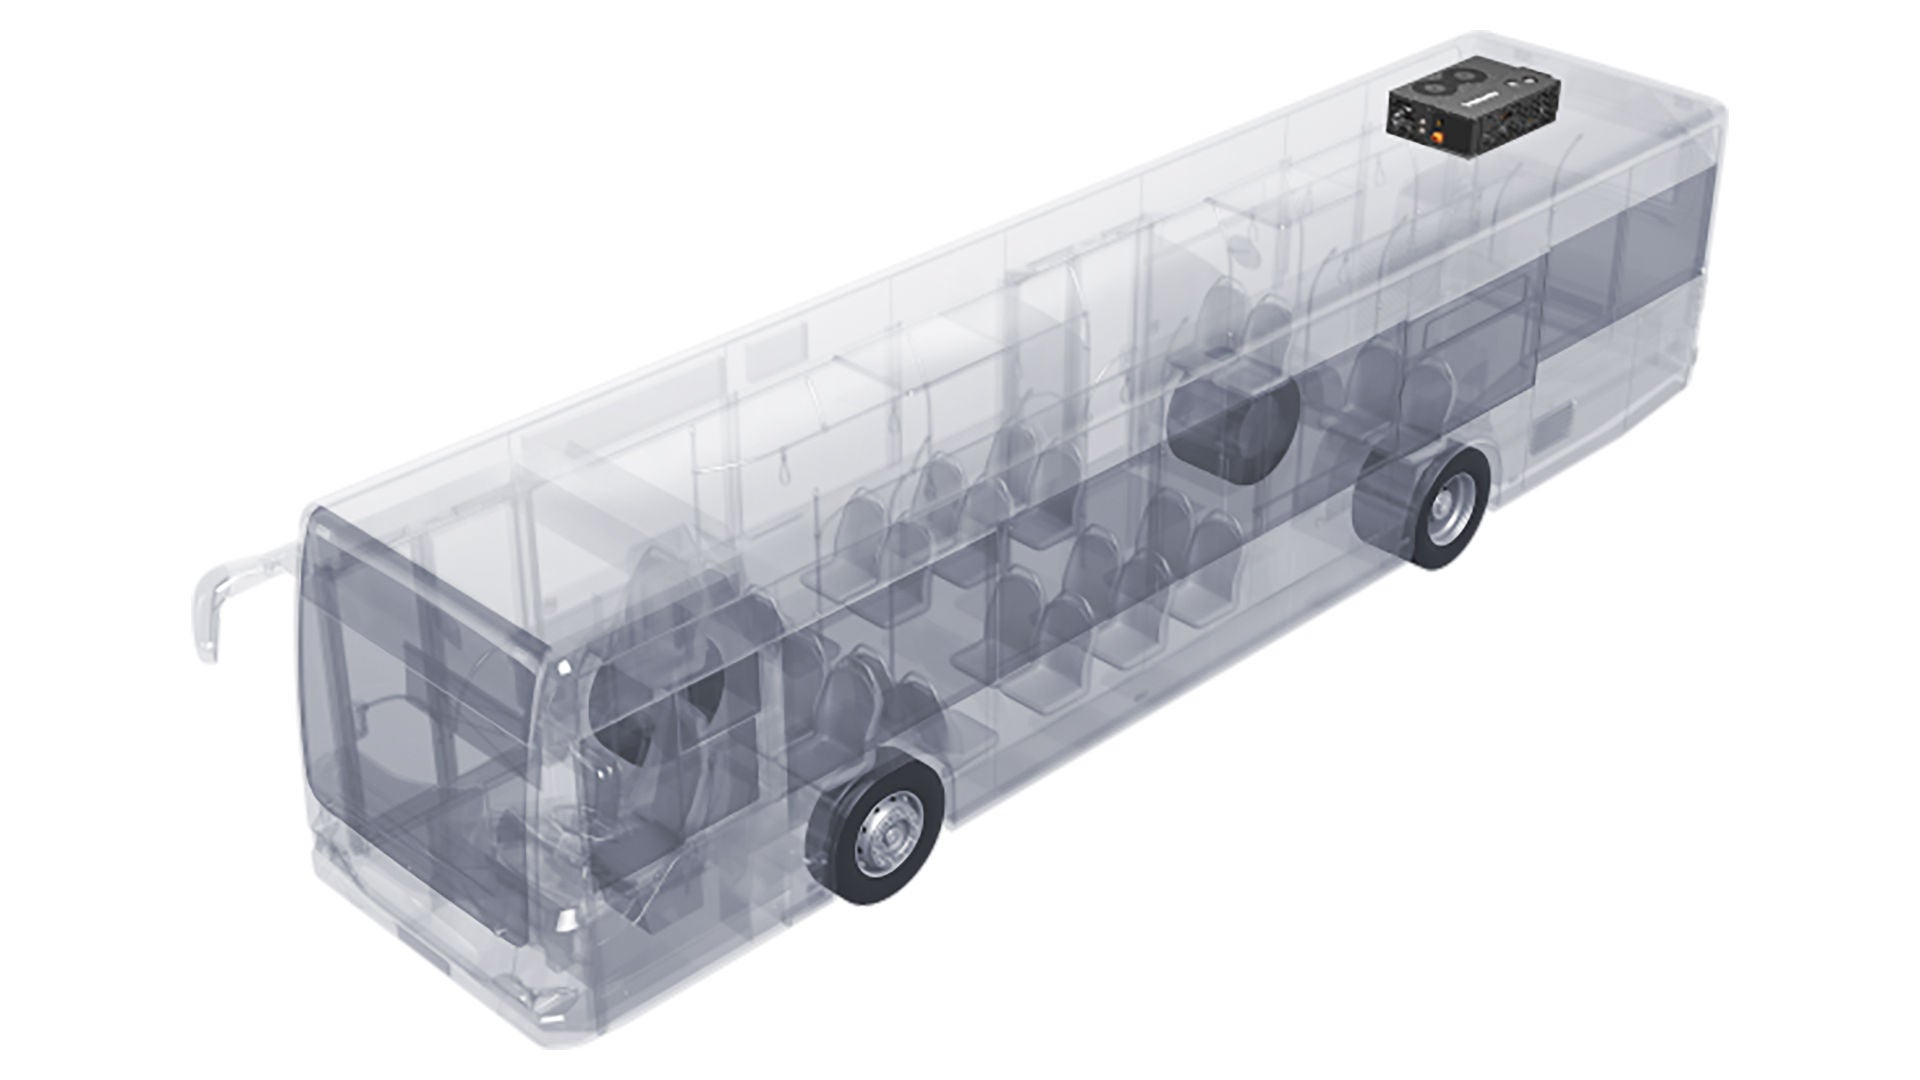 Illustration of eBTM installed in a bus